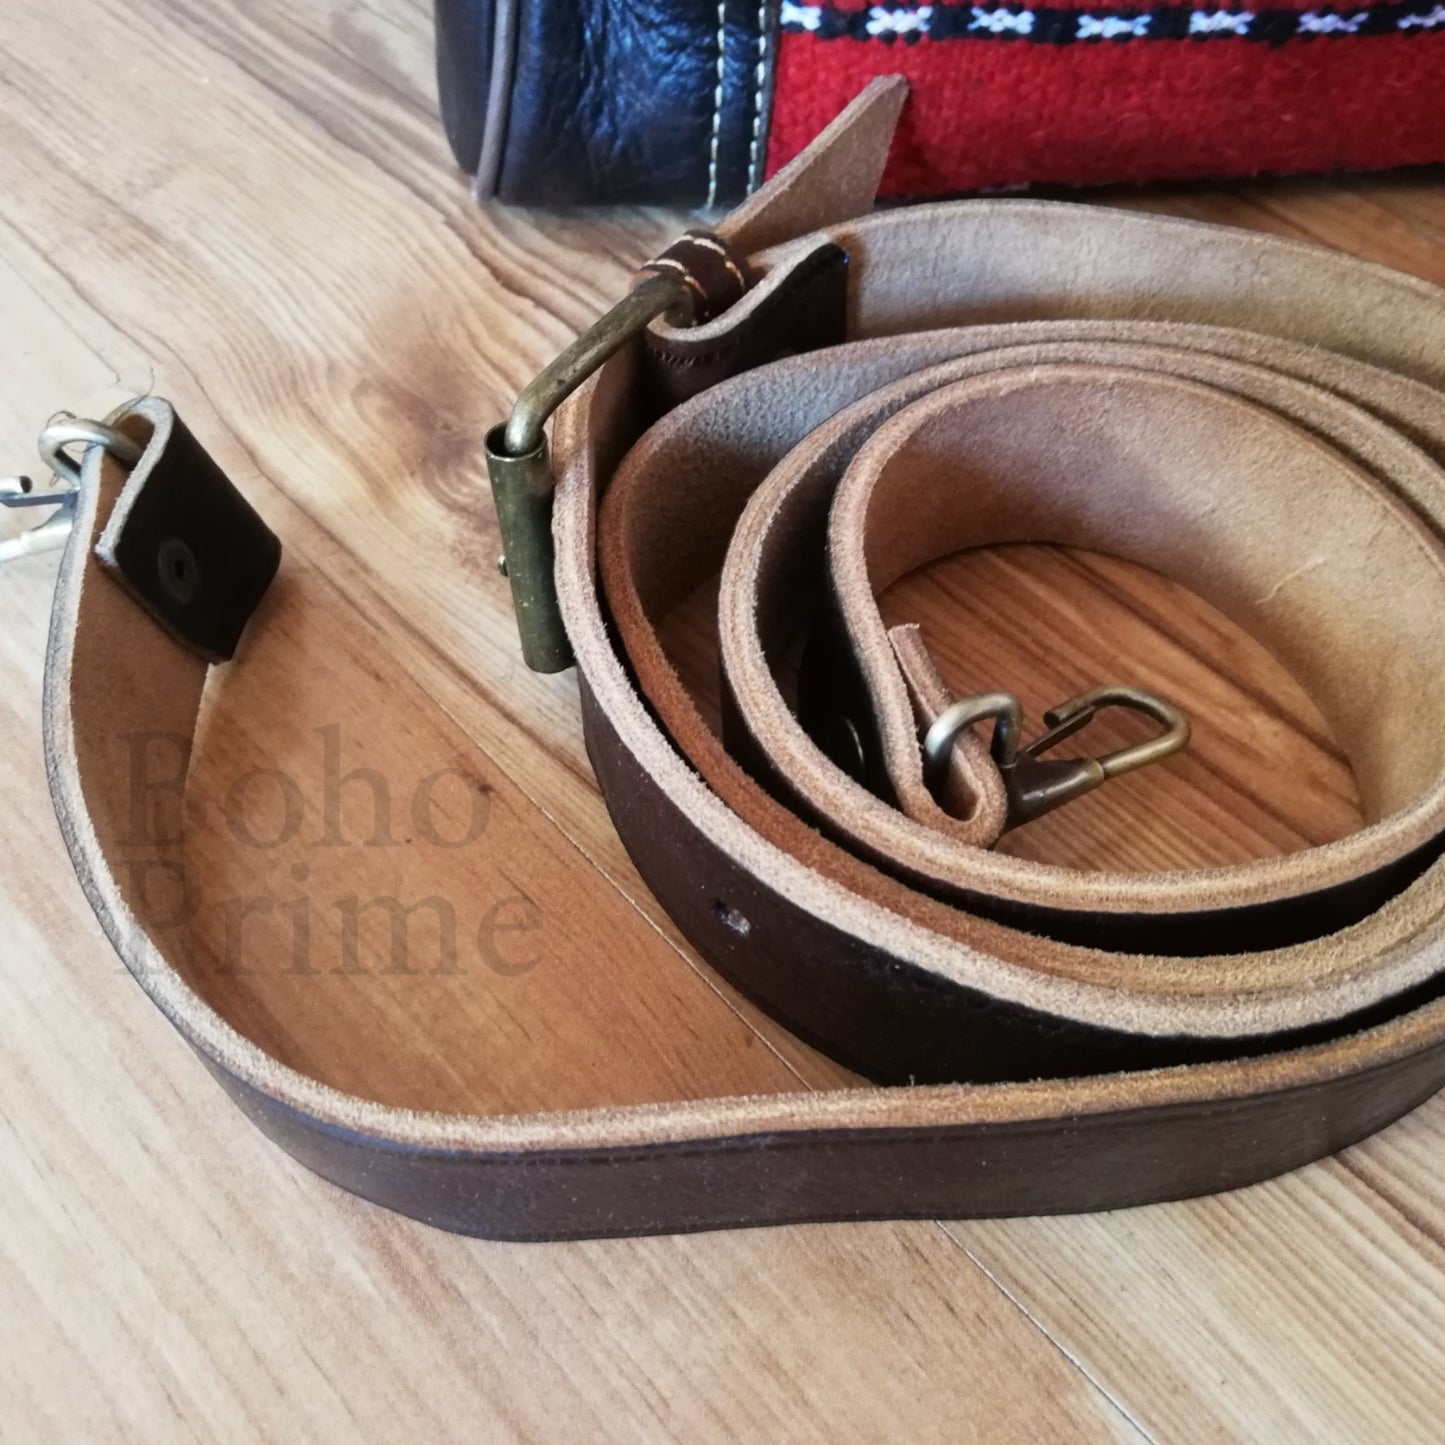 Boho Leather Travel Weekend Bag,Kilim Travel Bag, Carpet Design